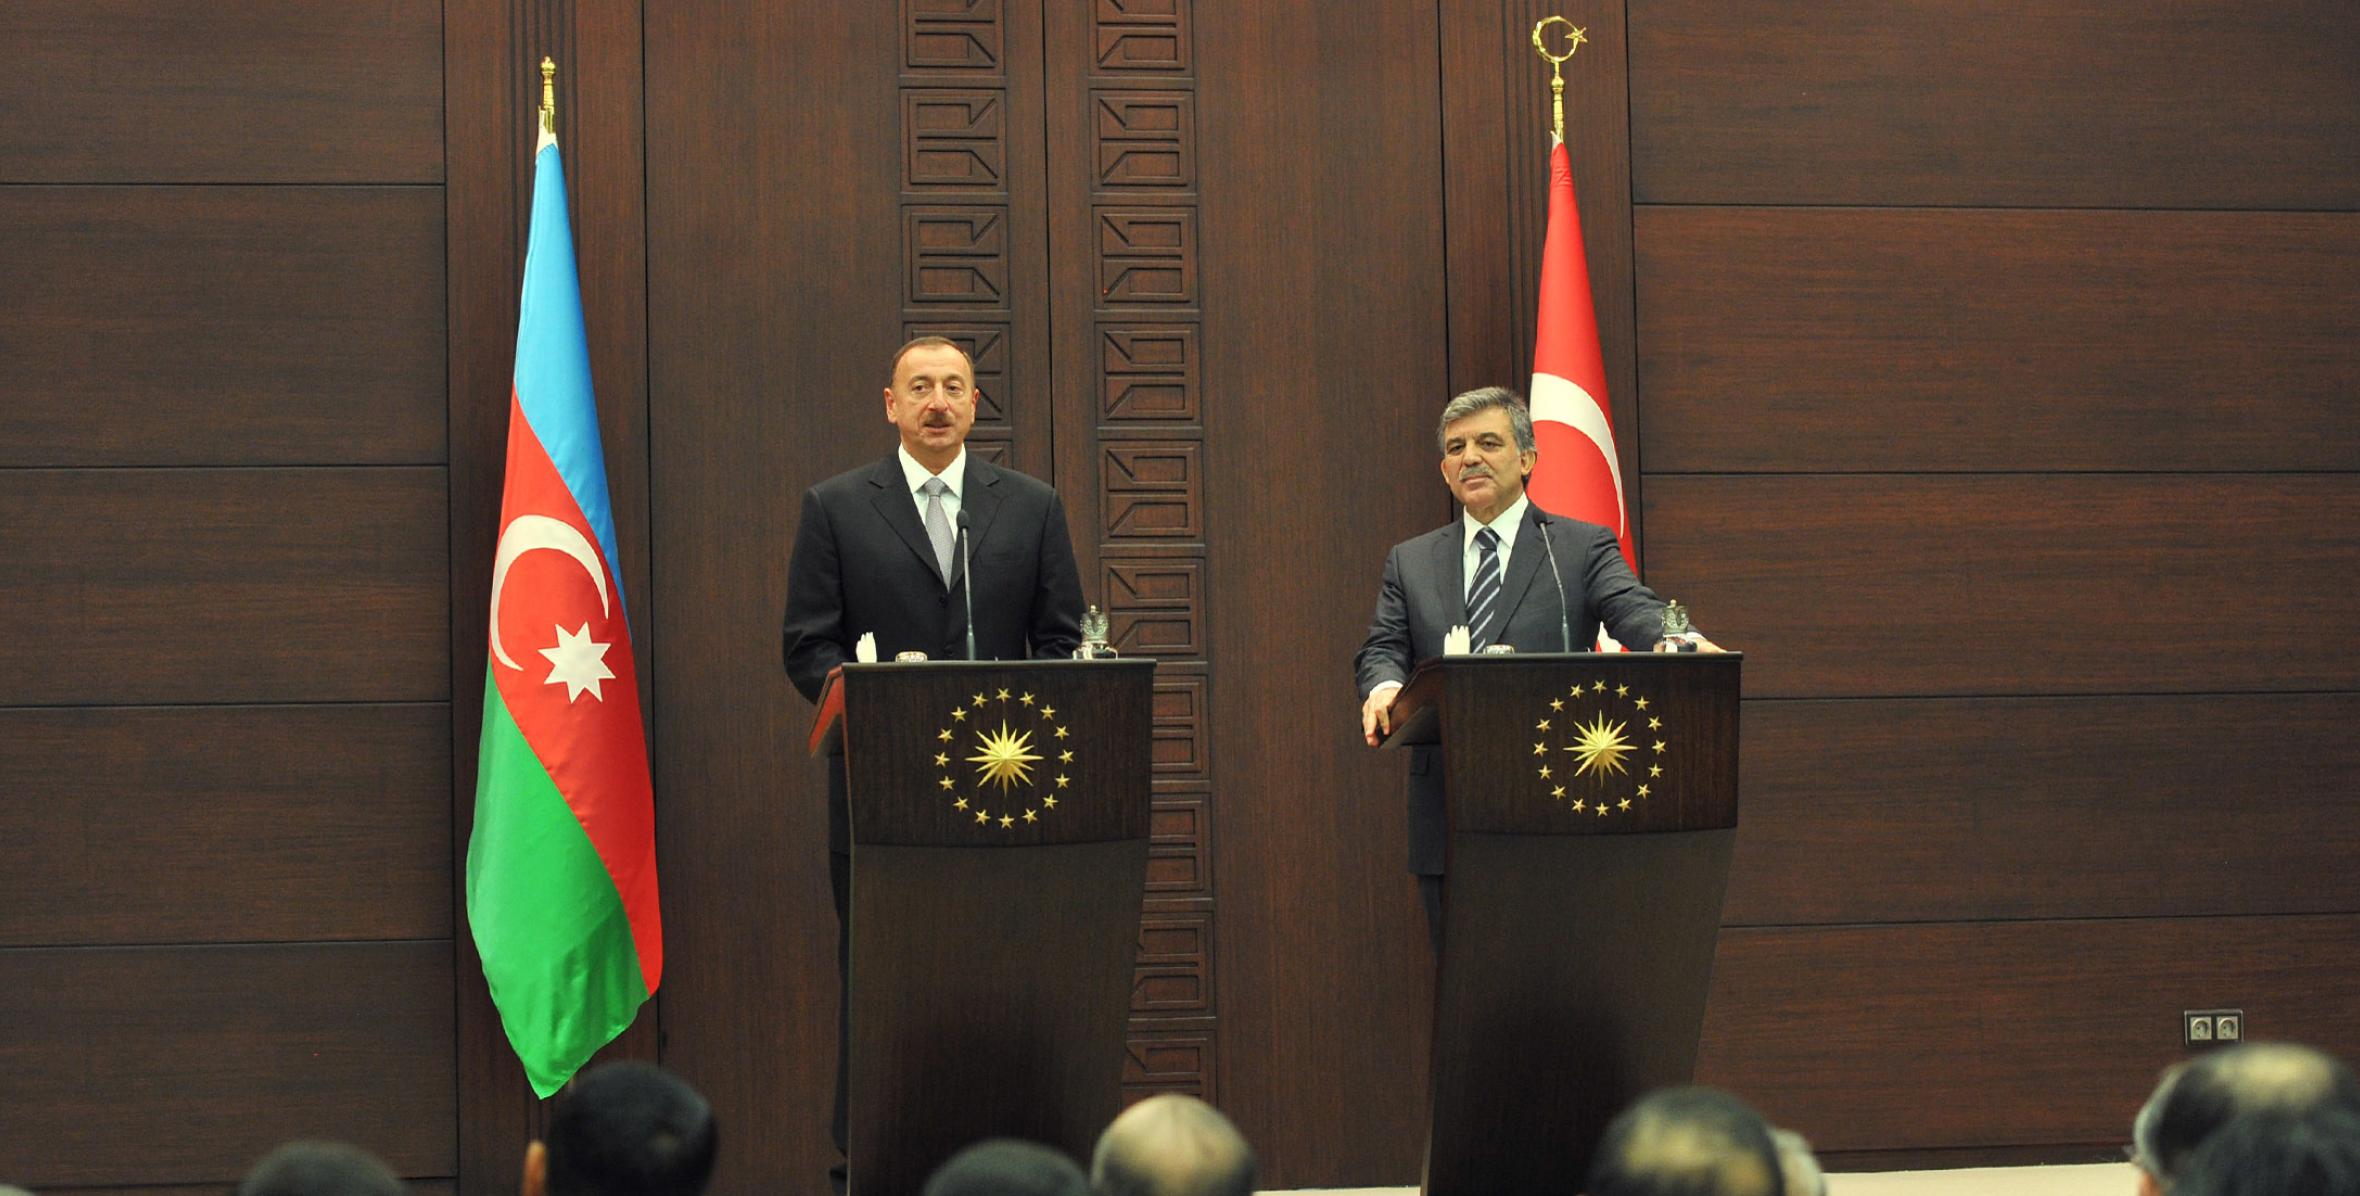 Ильхам Алиев и Президент Абдуллах Гюль выступили с заявлениями для печати